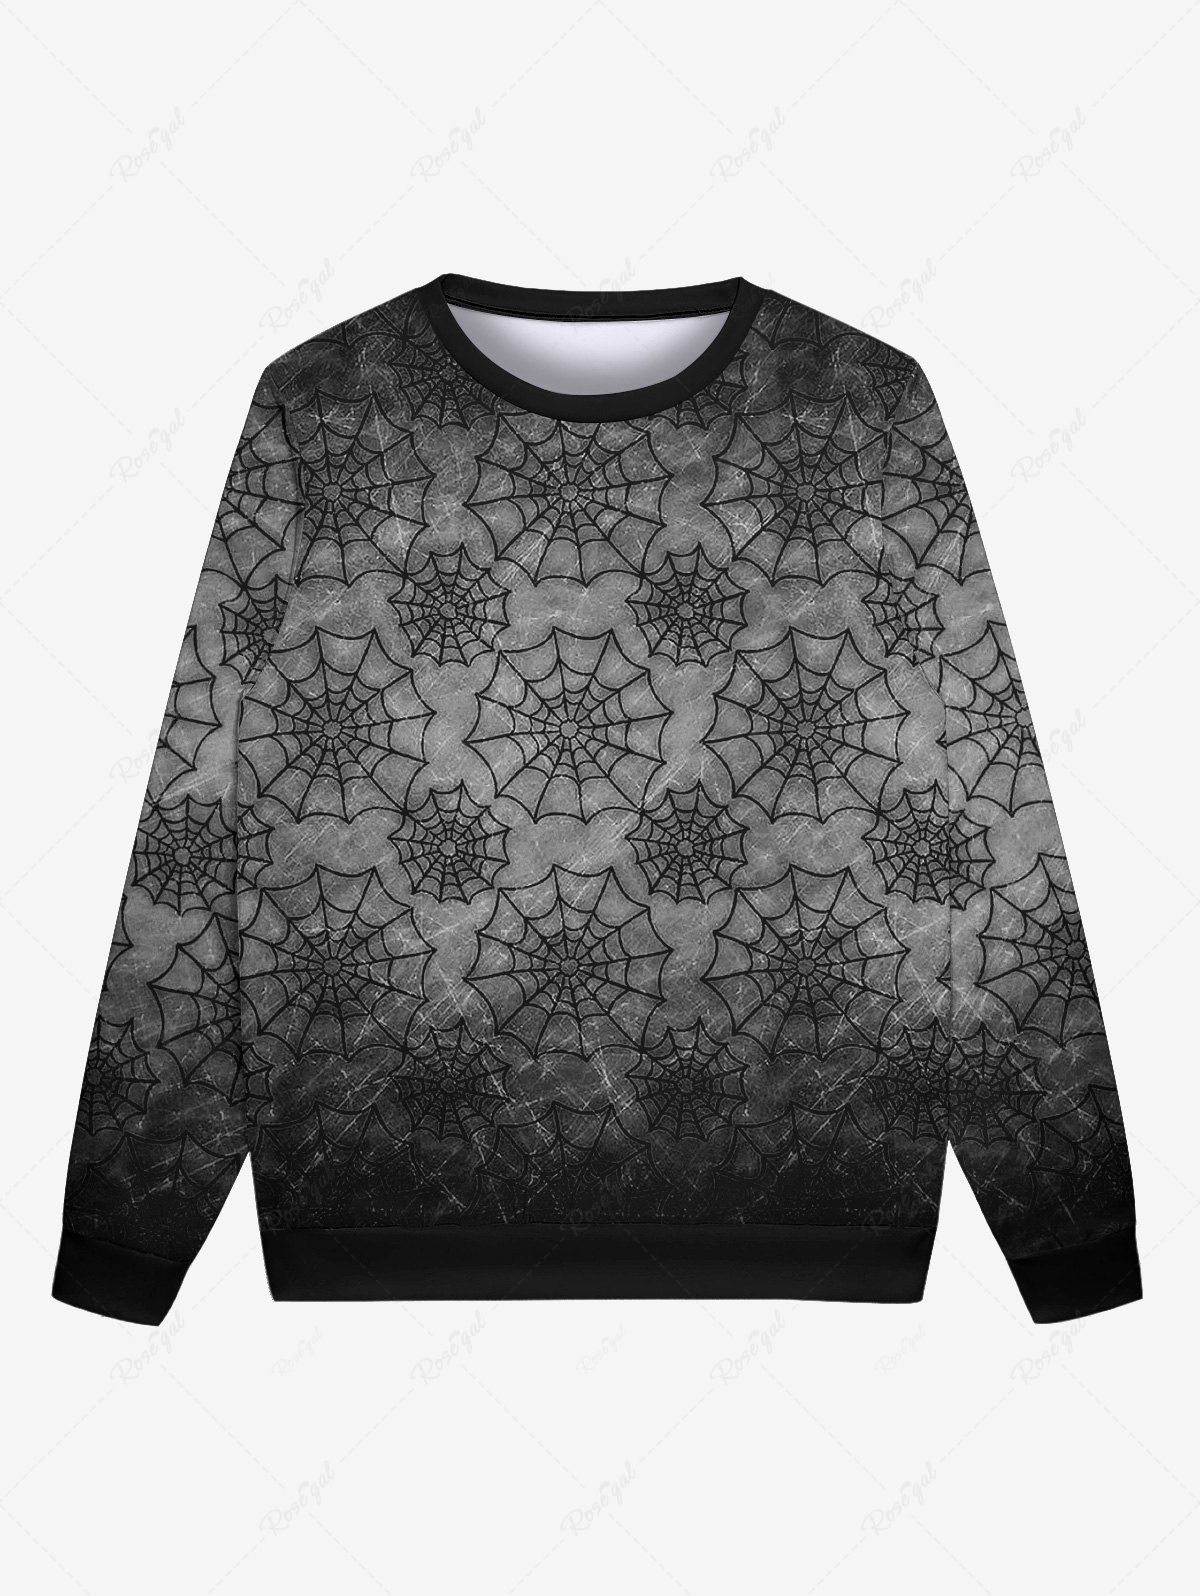 Online Gothic Halloween Spider Web Print Sweatshirt For Men  